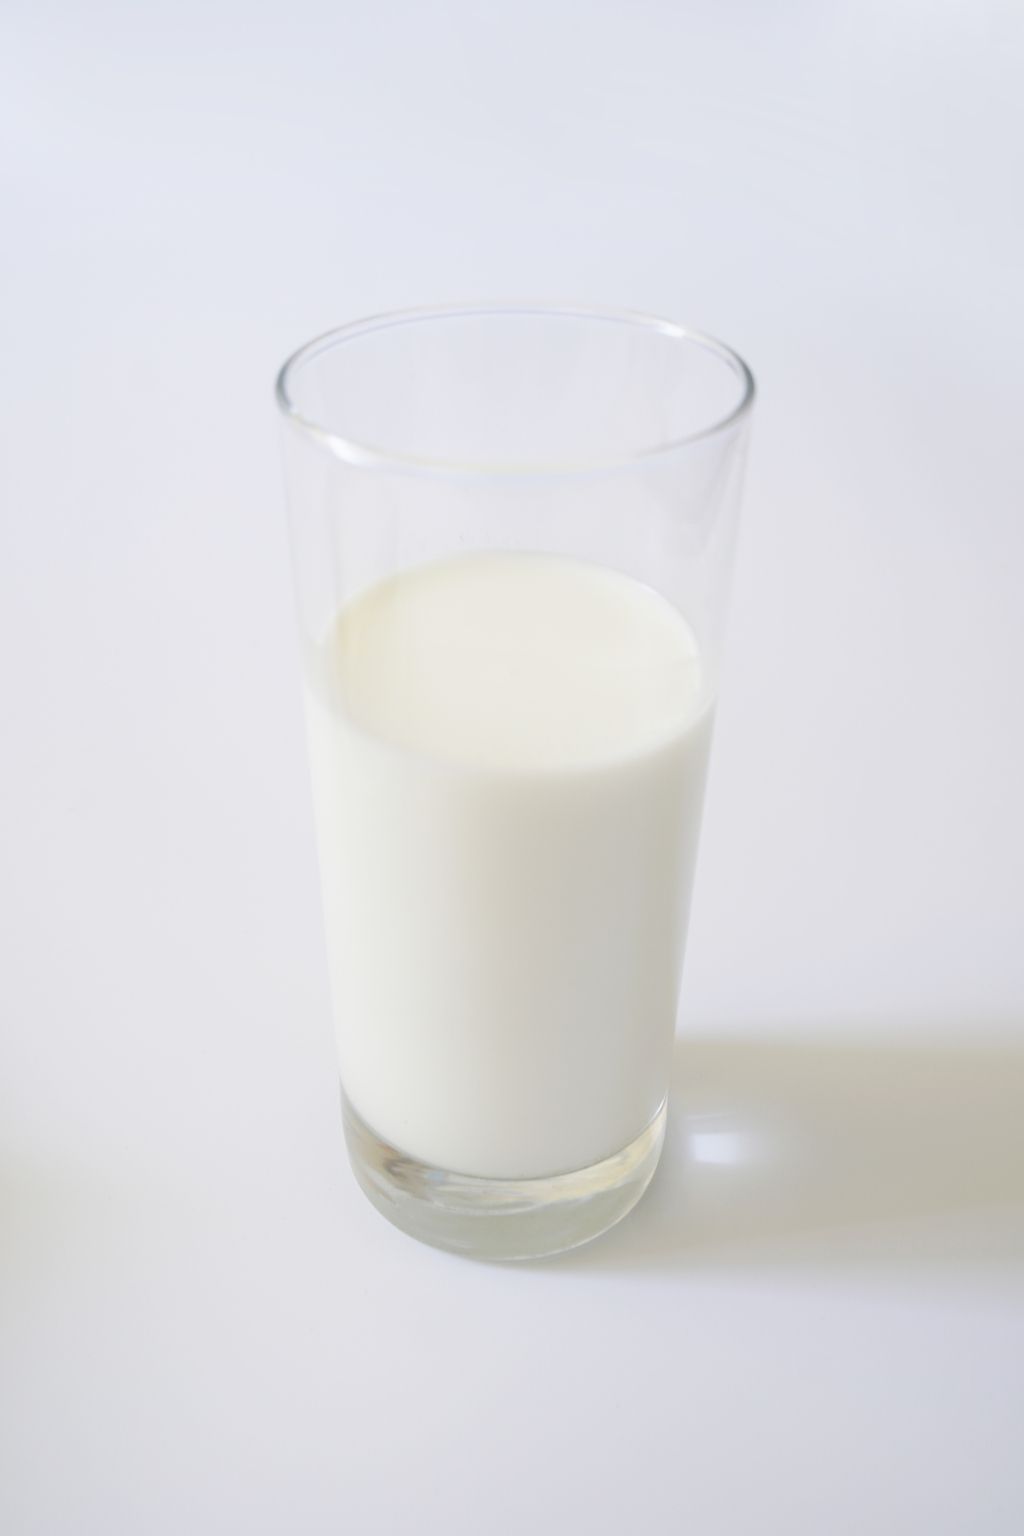 6张牛奶一杯图片 实拍一杯牛奶照片真实大全